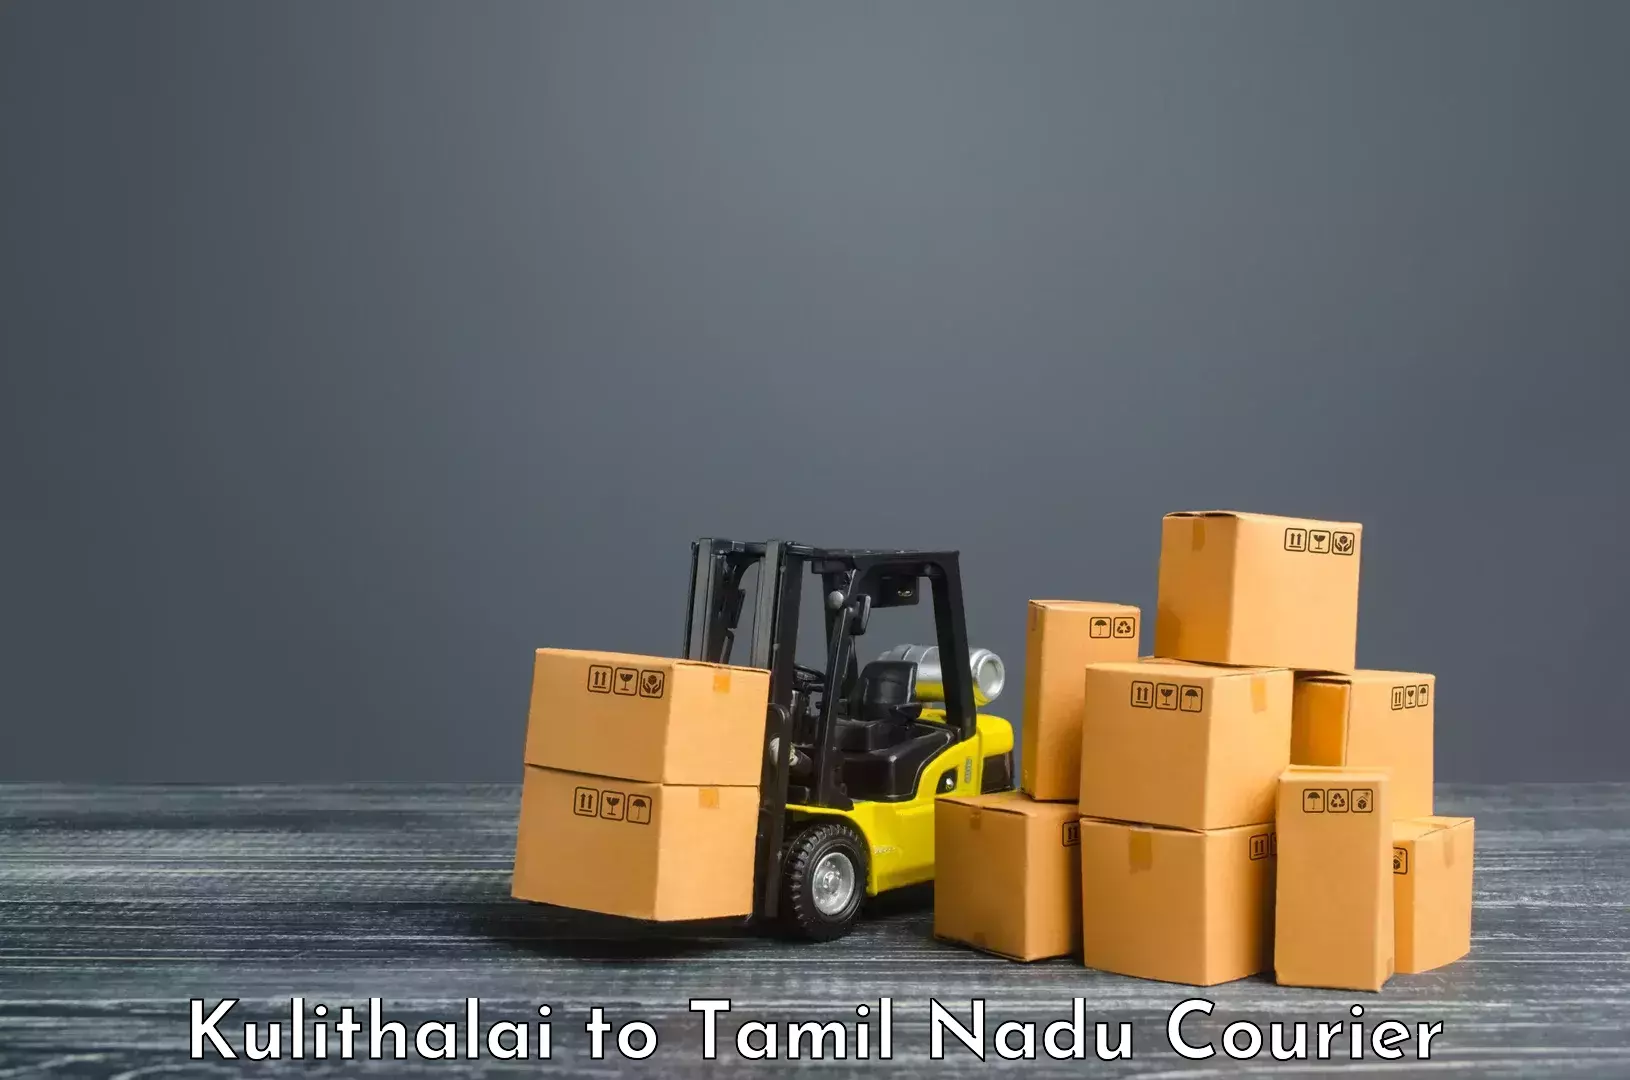 Logistics service provider Kulithalai to Perundurai